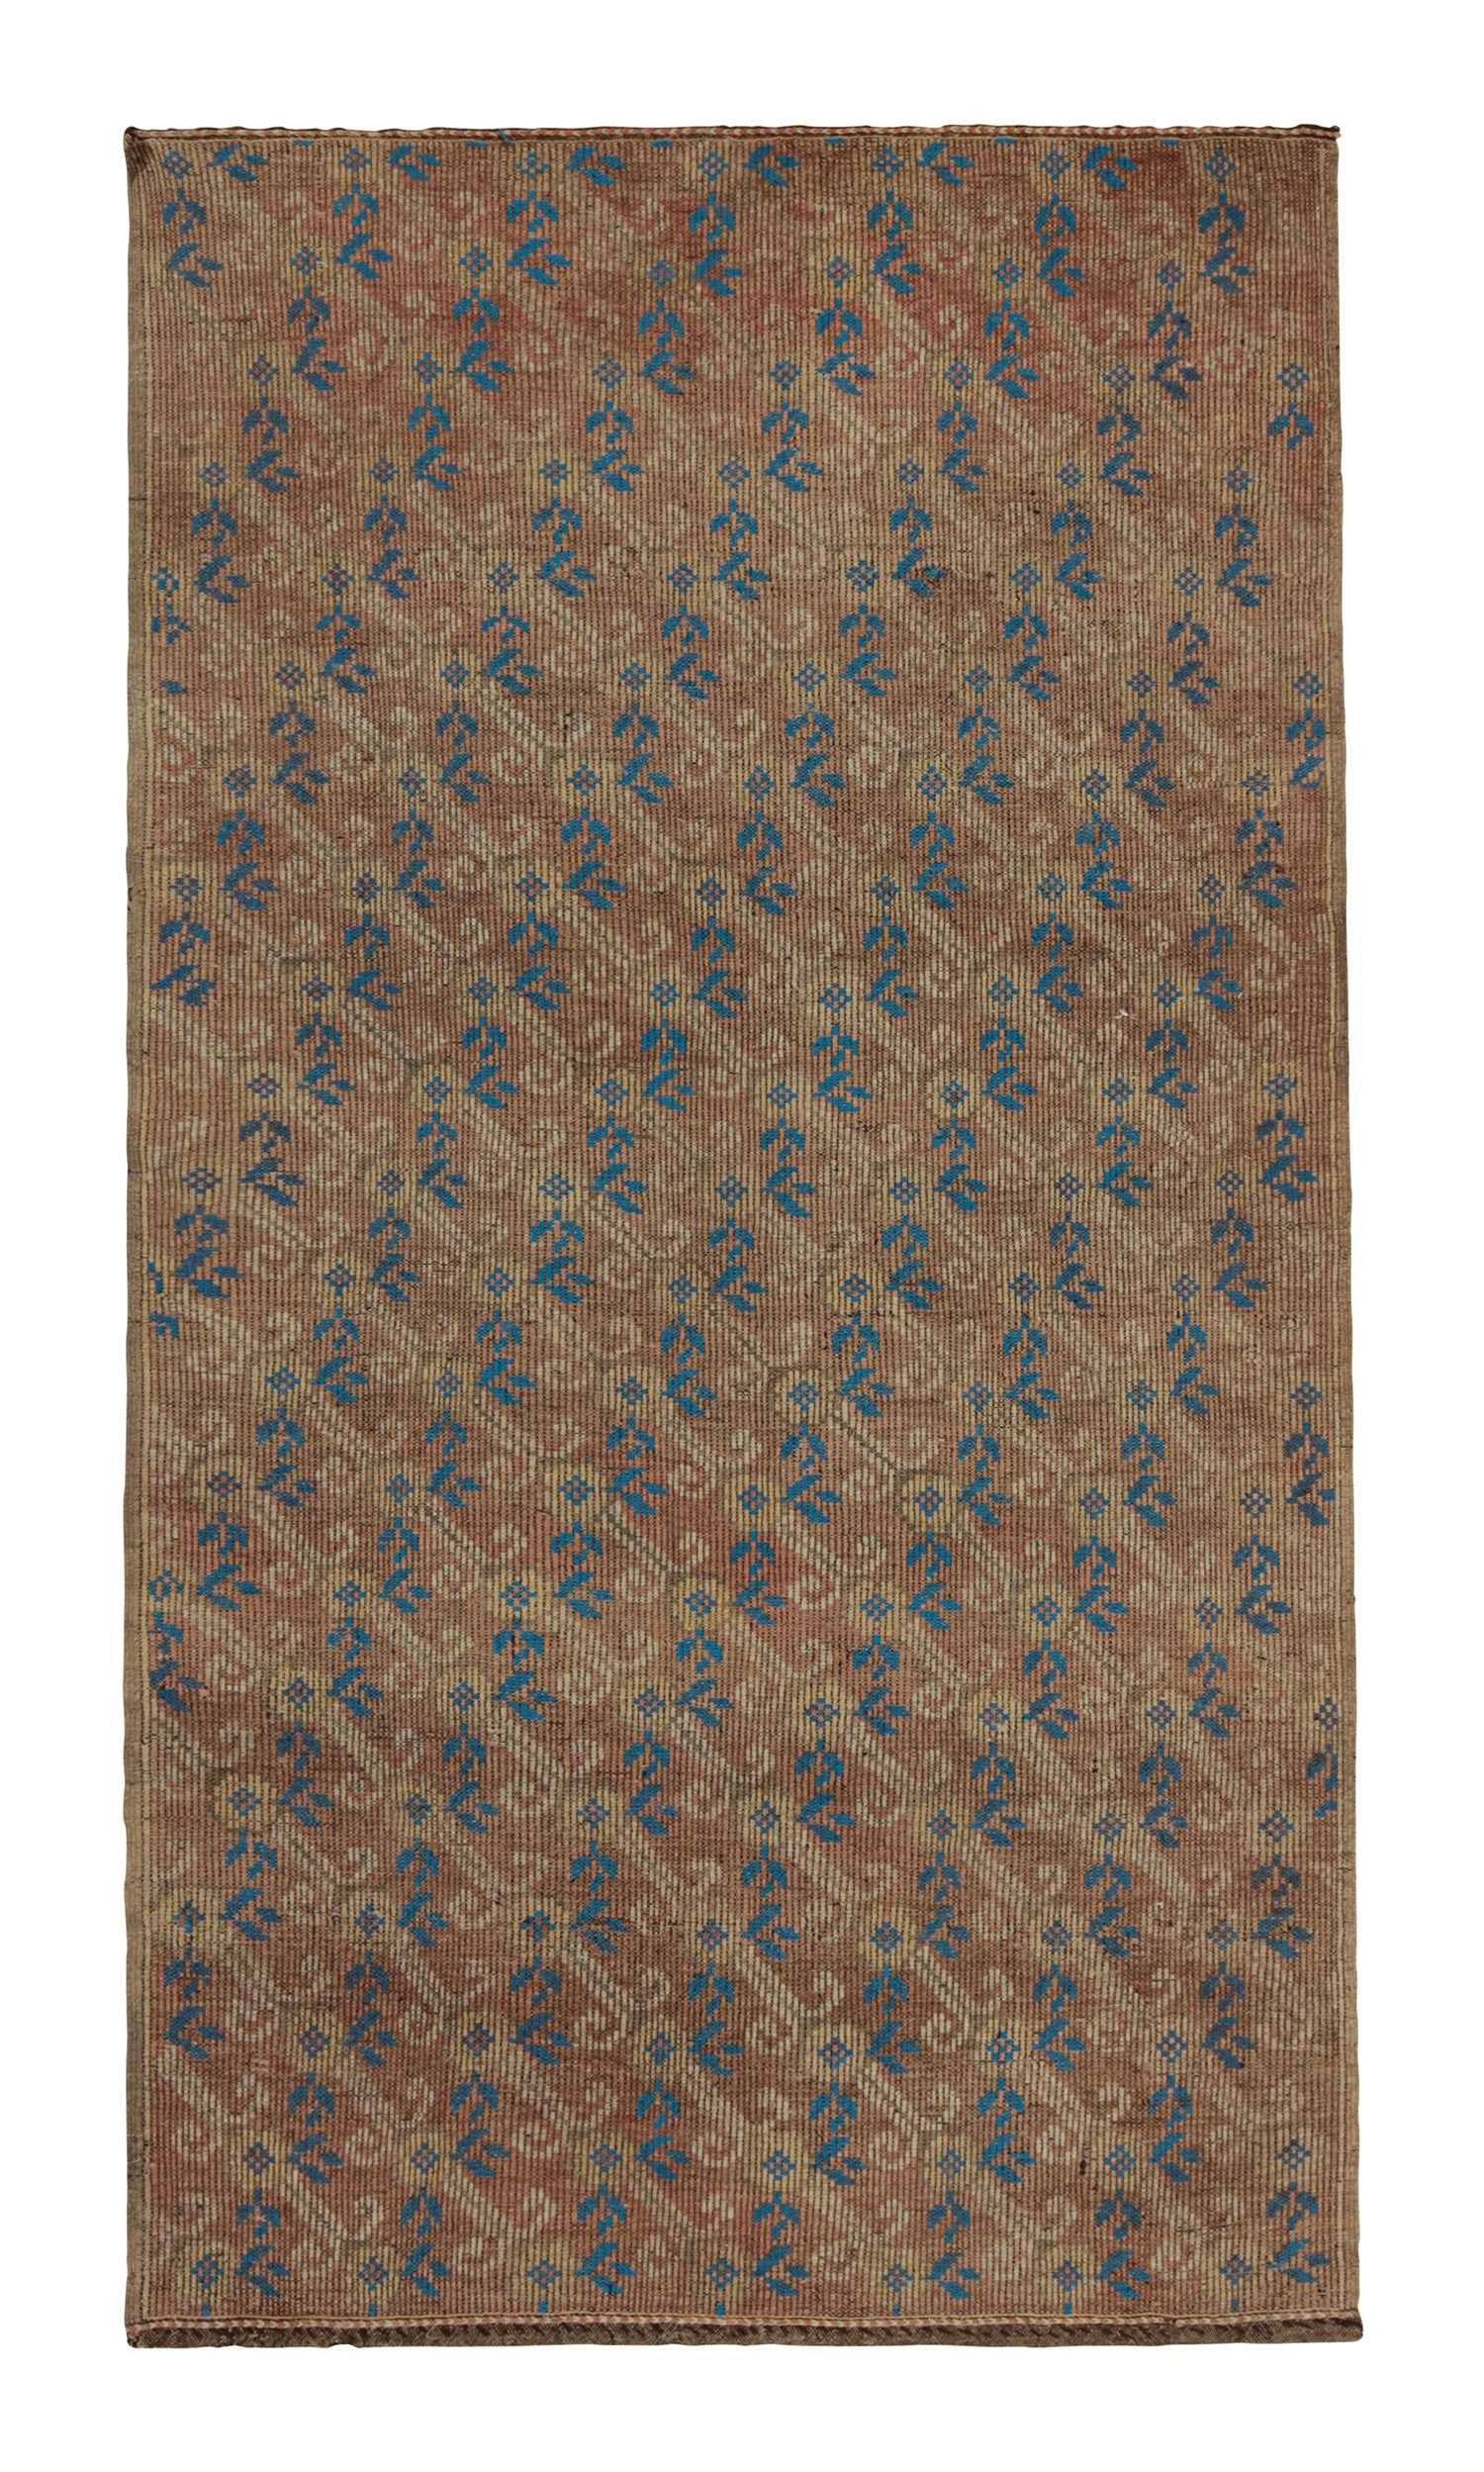 Teppich & Kelim im Chaput-Stil in Braun-Rosa mit blauen Akzenten von Teppich & Kelim